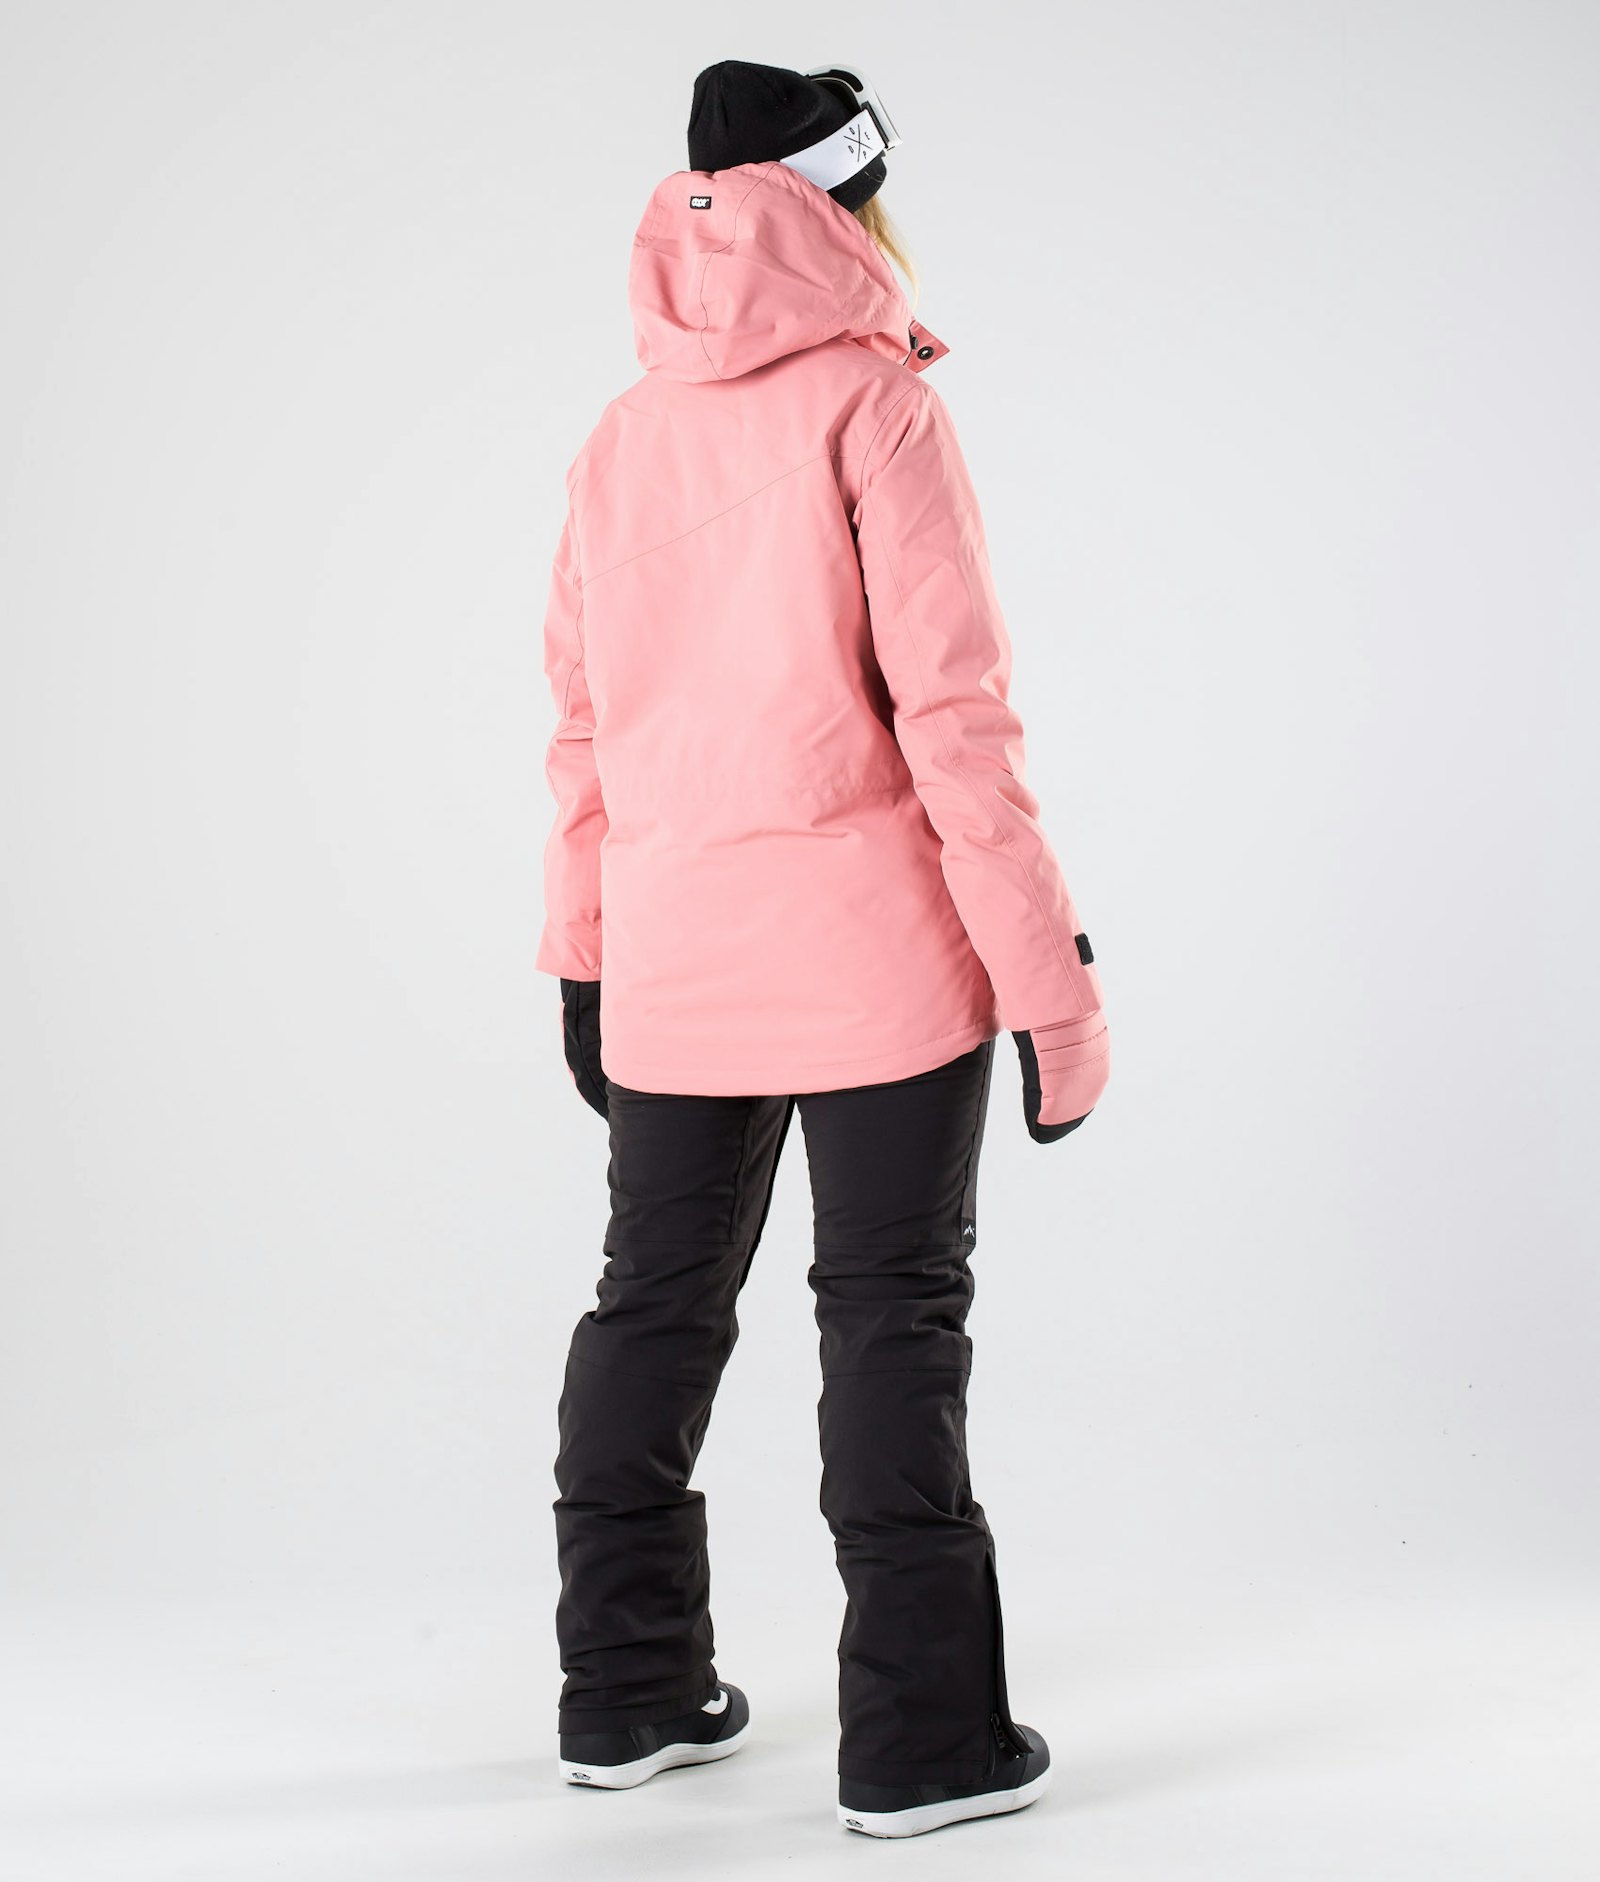 Adept W 2019 Snowboardjacke Damen Pink